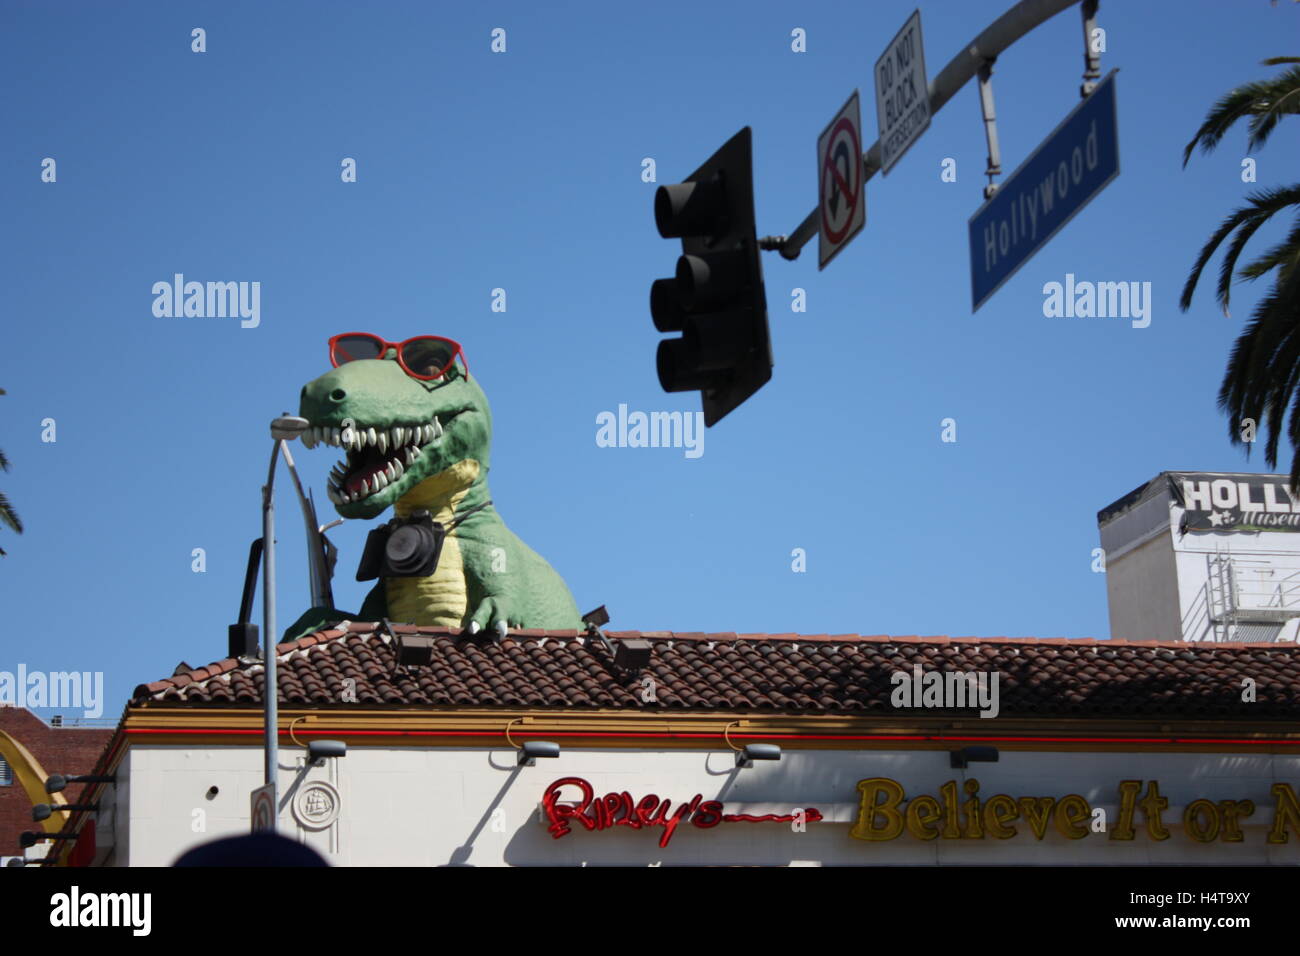 Dinosaure à lunettes sur le haut d'un immeuble sur la Ripleys Believe it or Not Banque D'Images